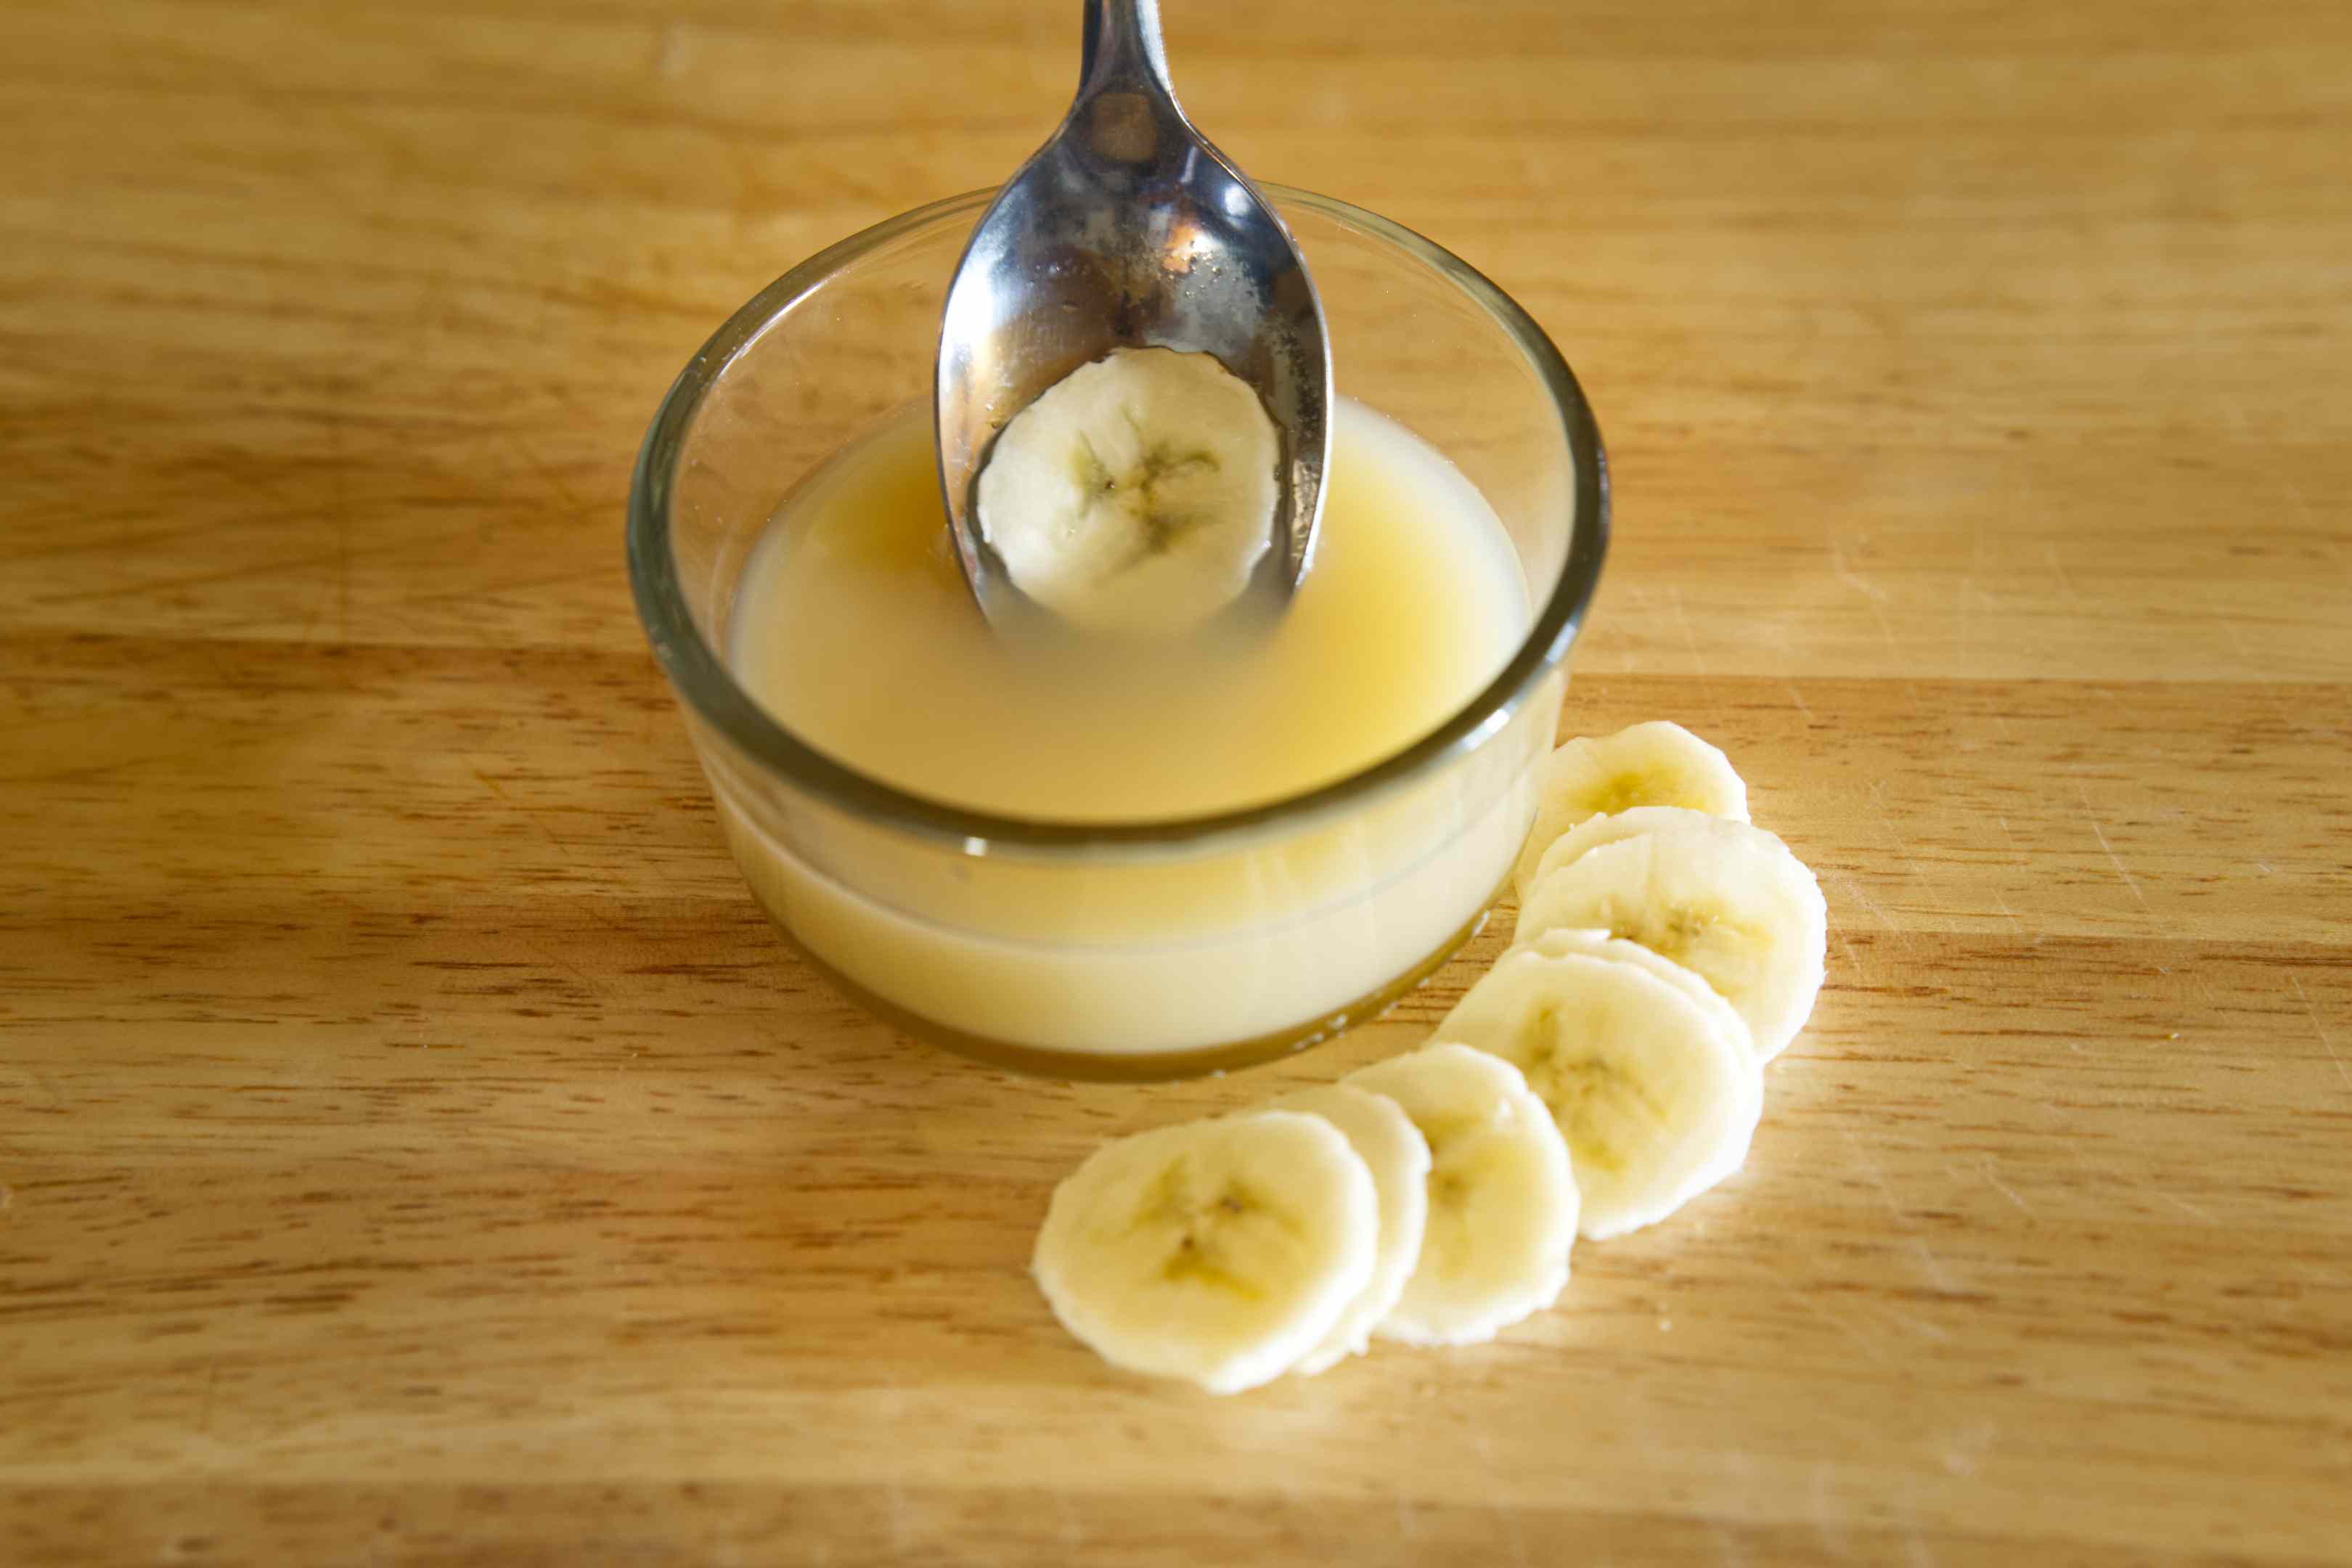 用勺子蘸香蕉片到盛满柠檬水的玻璃碗里，防止变色